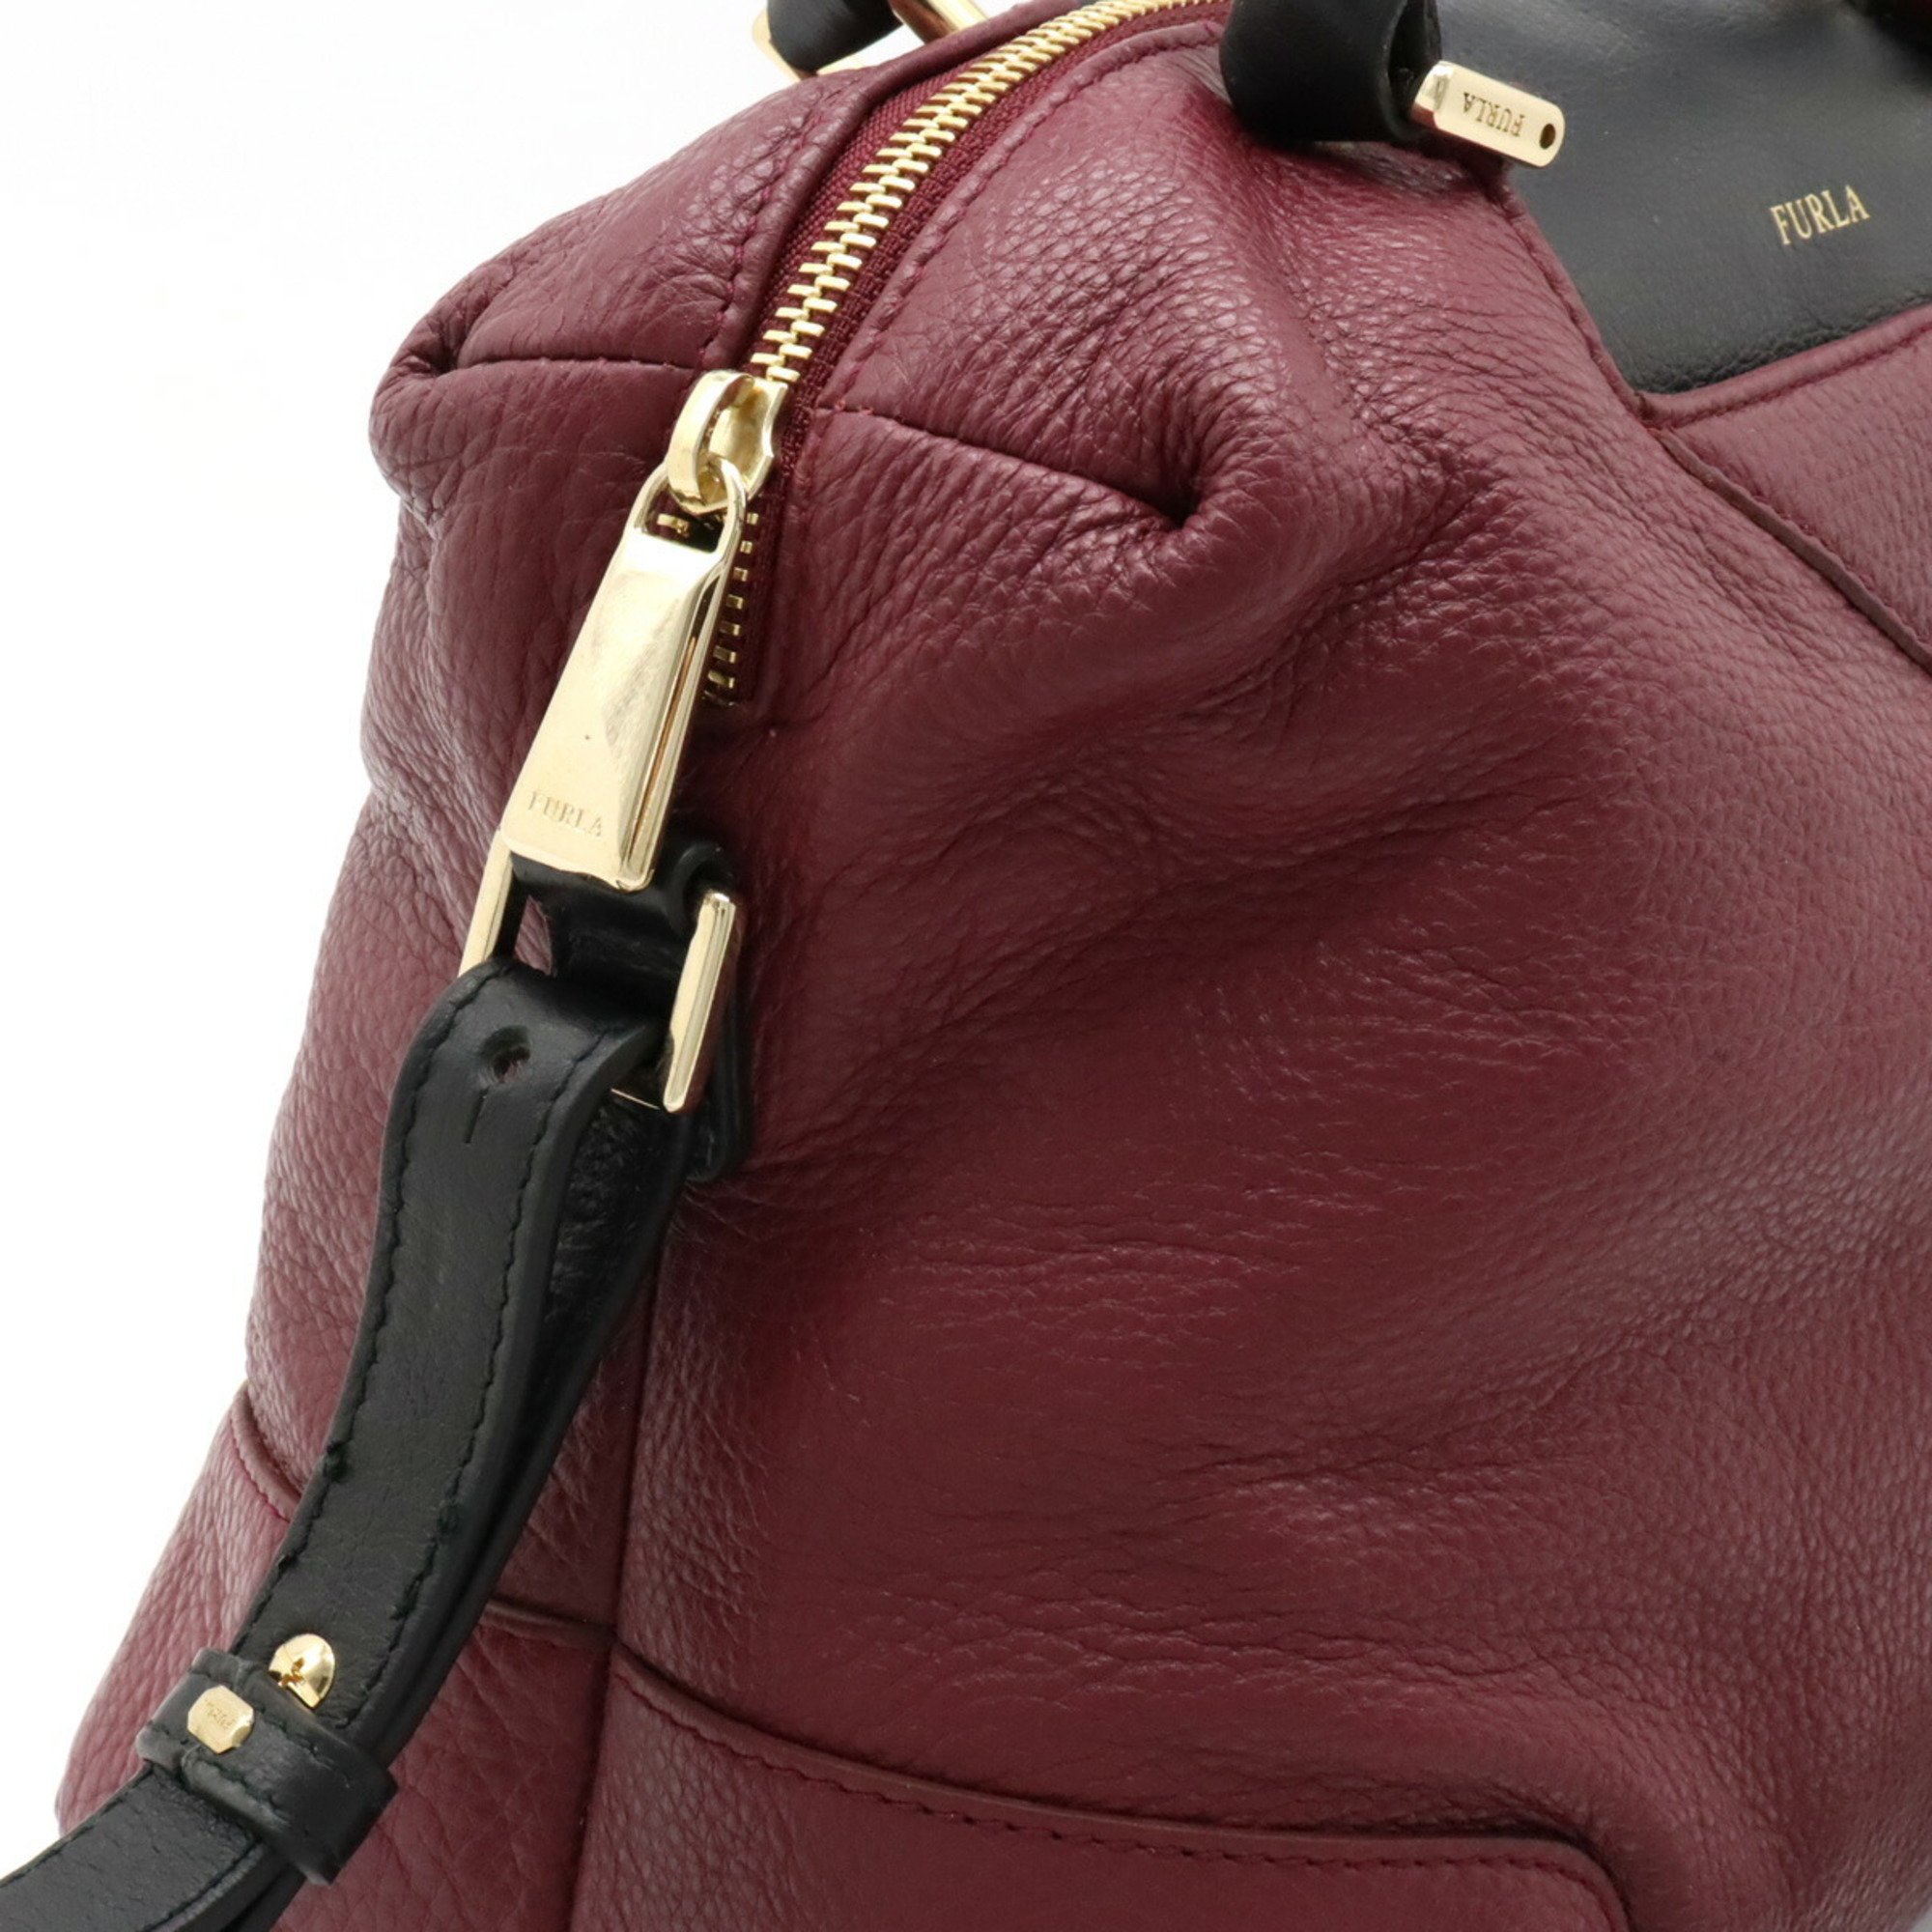 FURLA bicolor handbag shoulder bag wine red purple black